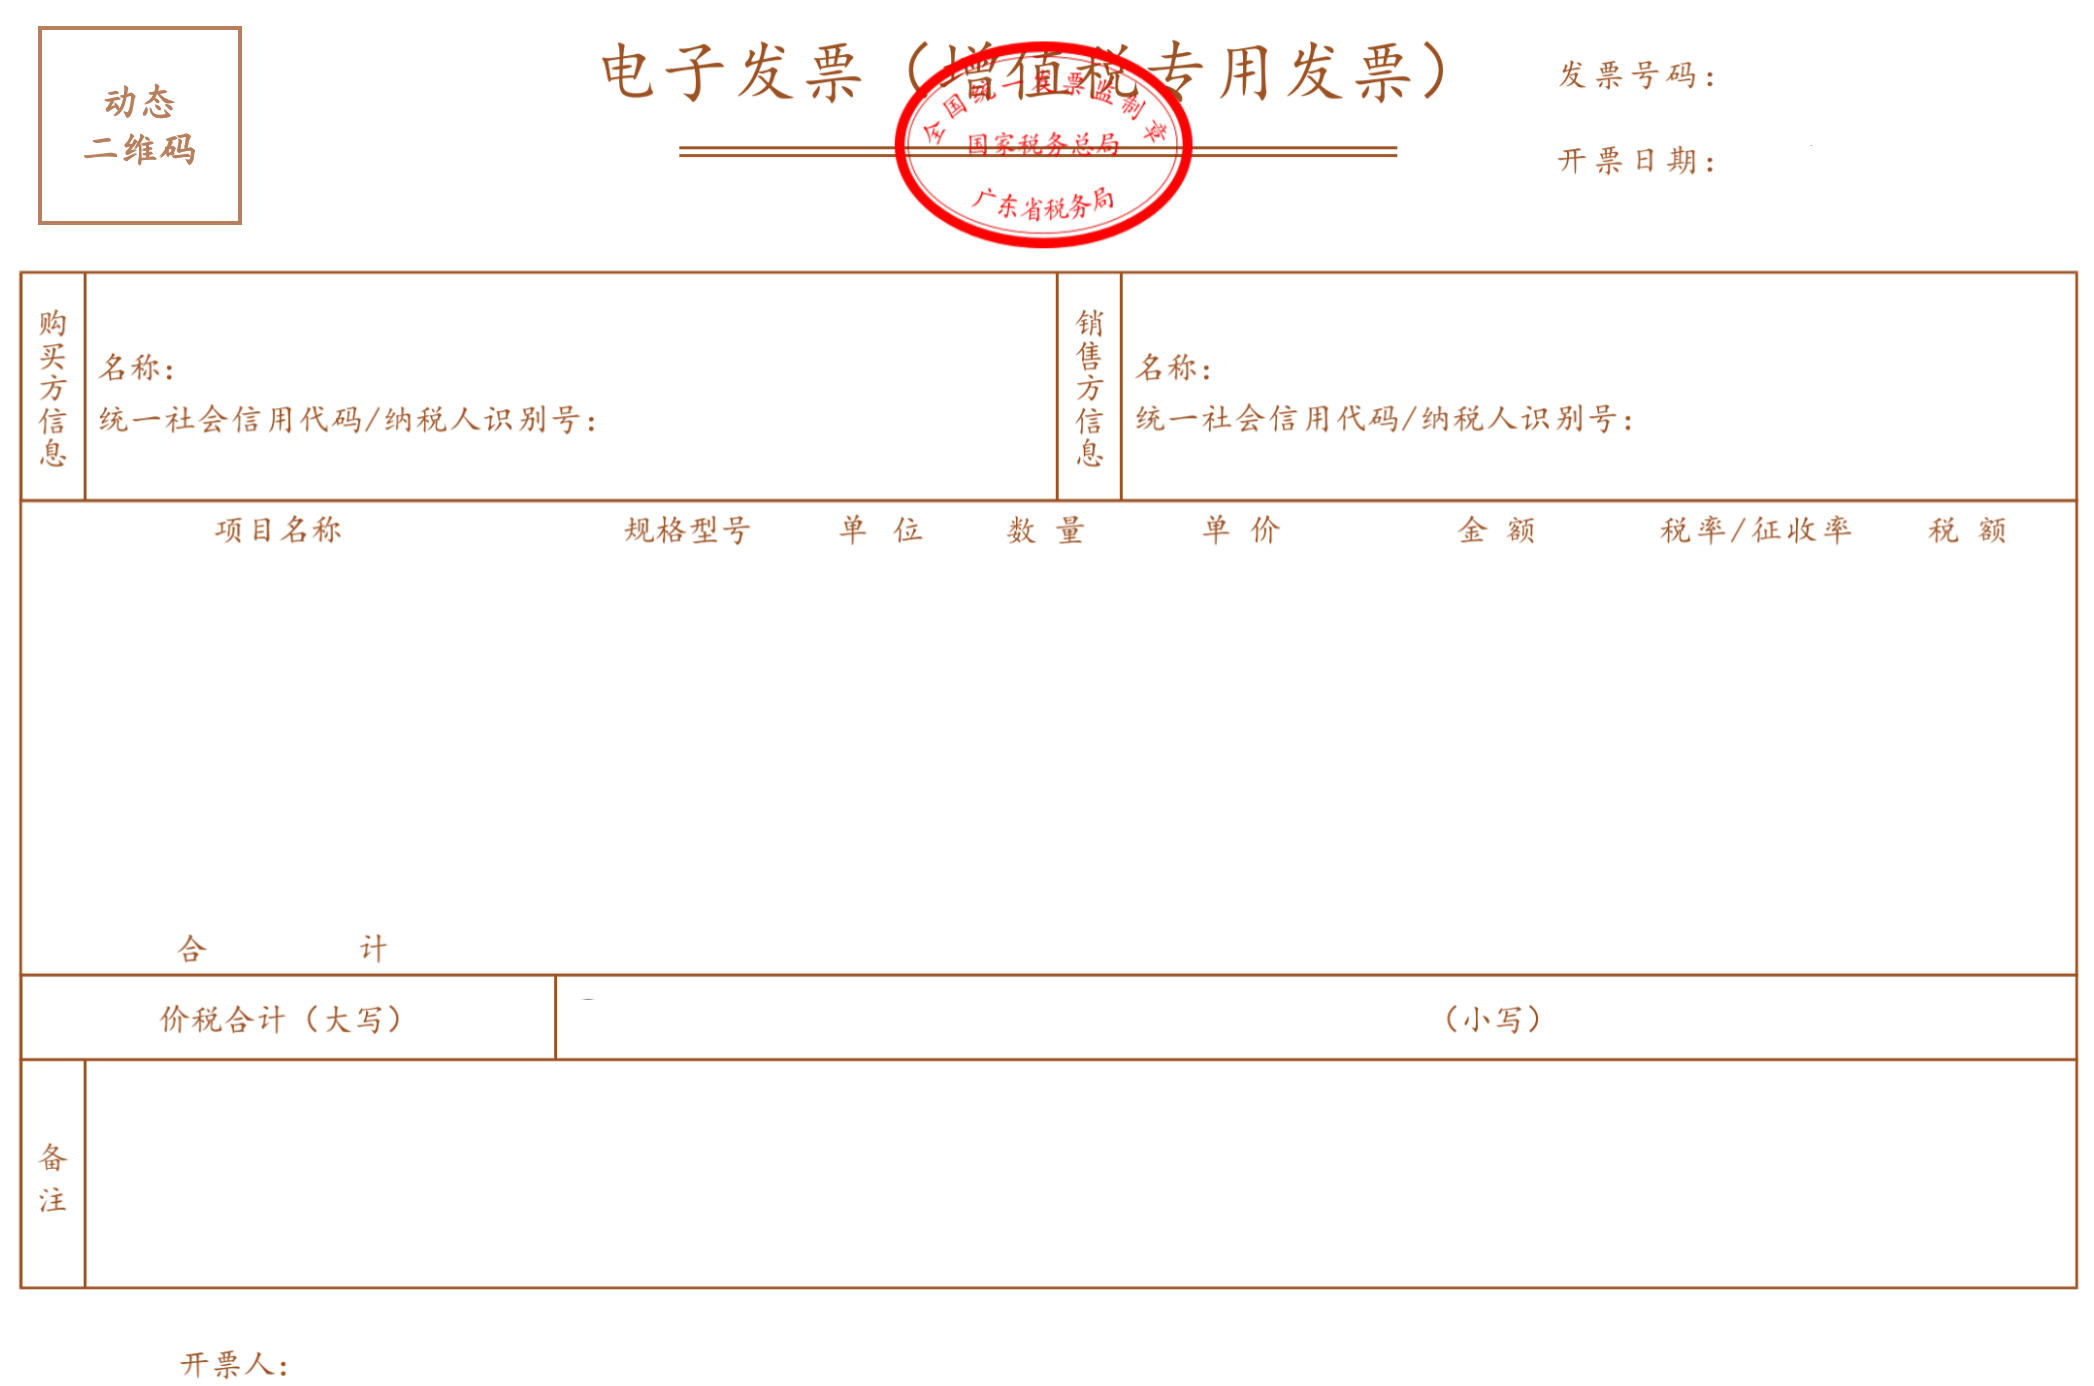 国家税务总局广东省税务局关于开展全面数字化的电子发票试点工作的